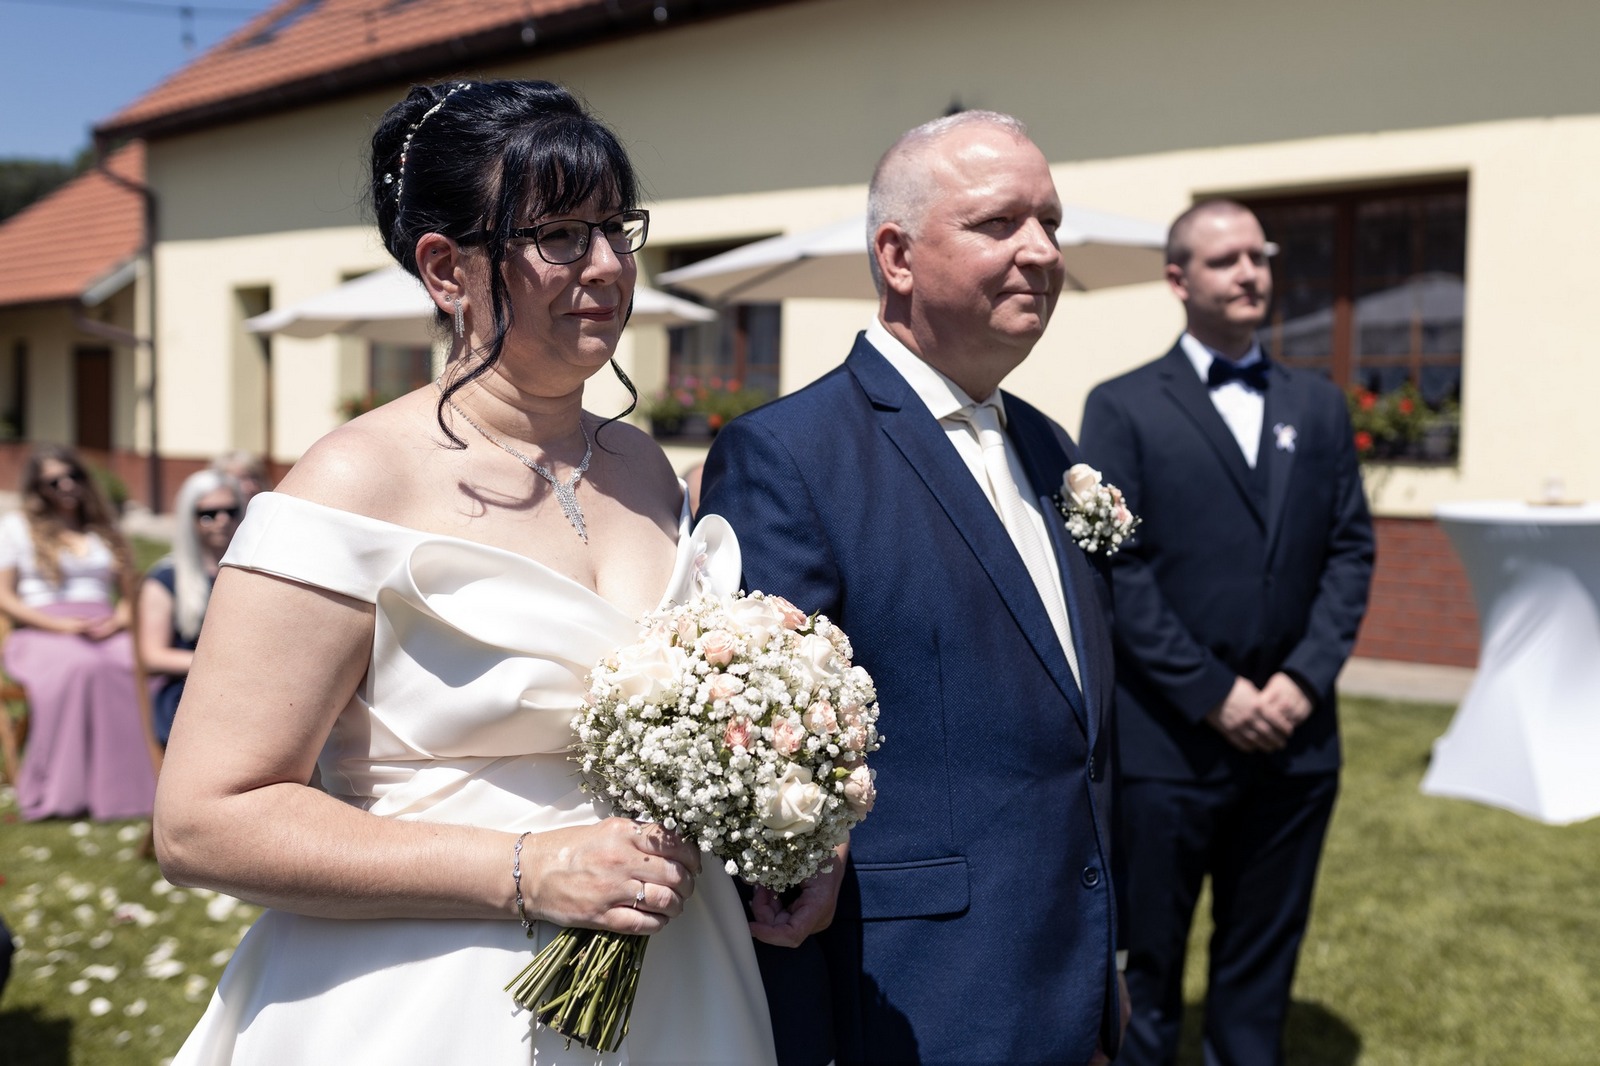 Svatba Hostinec u Vrbů ve Stašově, Hořovice ženich a nevěsta u oltáře